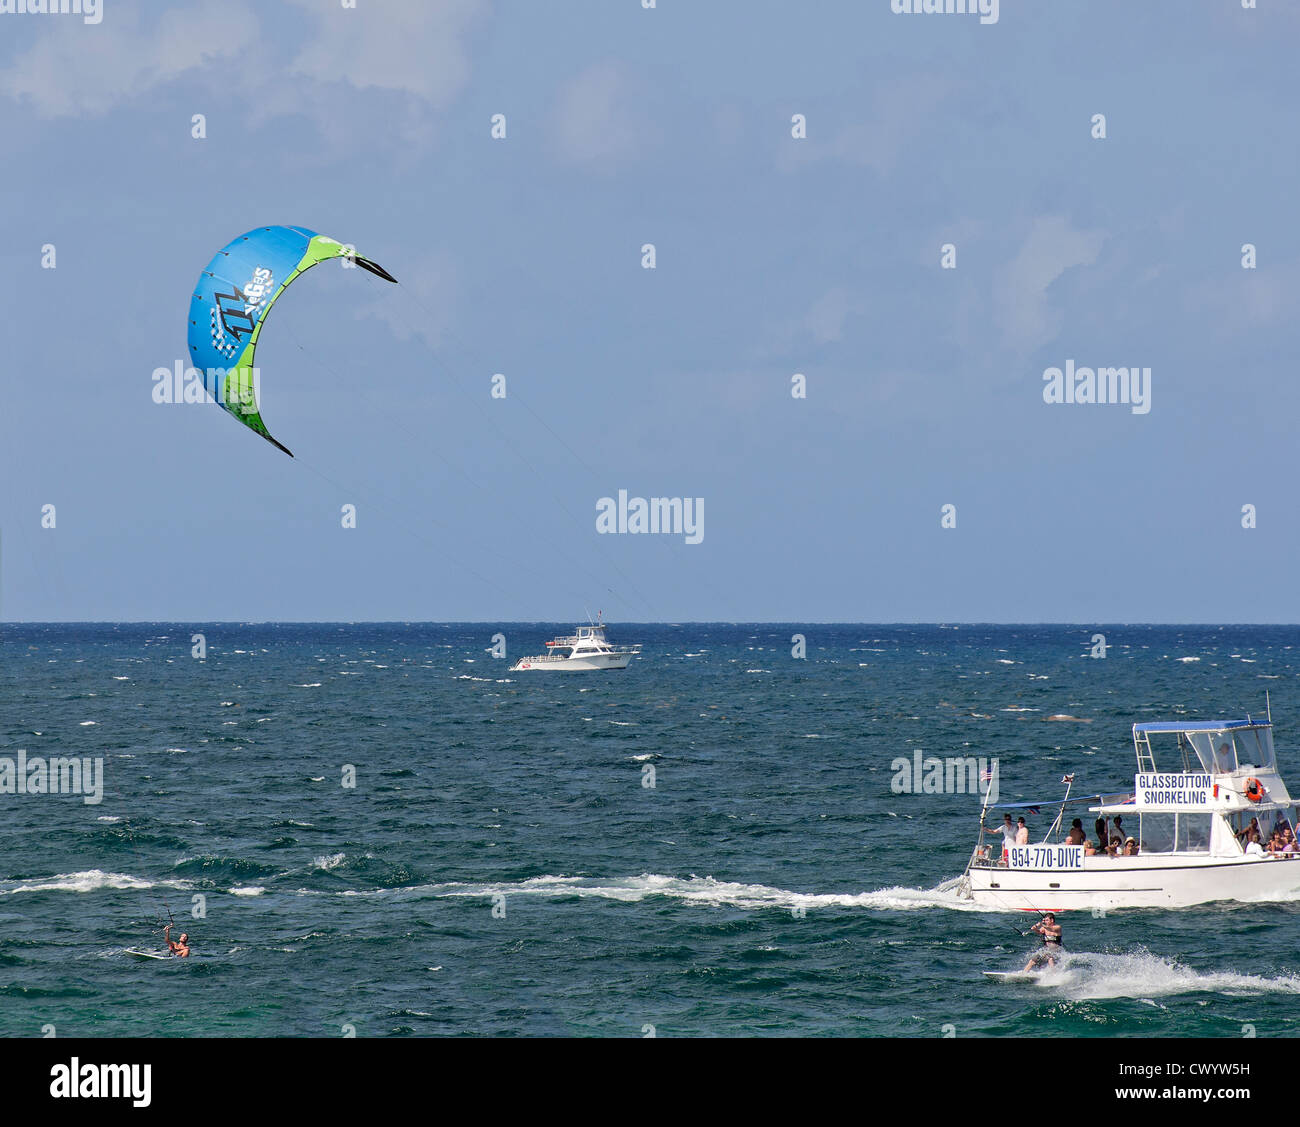 El kitesurf es una actividad favorita a lo largo de Ft. Lauderdale Beach del litoral atlántico. Foto de stock